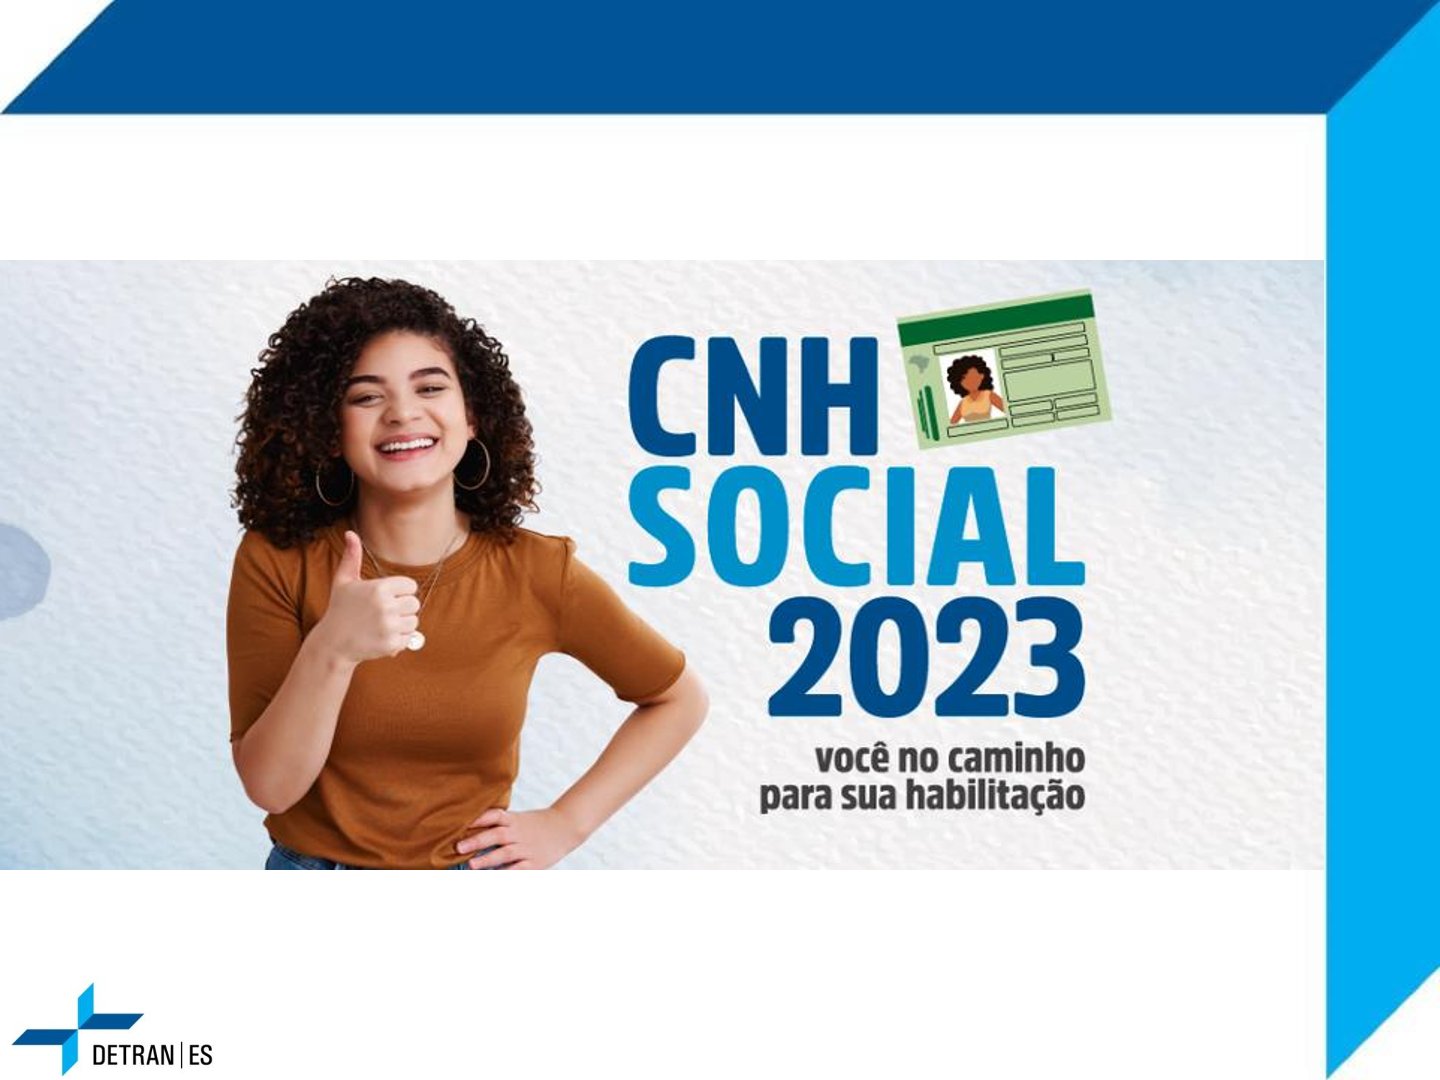 CNH SOCIAL 2023 - VOCÊ NO CAMINHO DA SUA HABILITAÇÃO